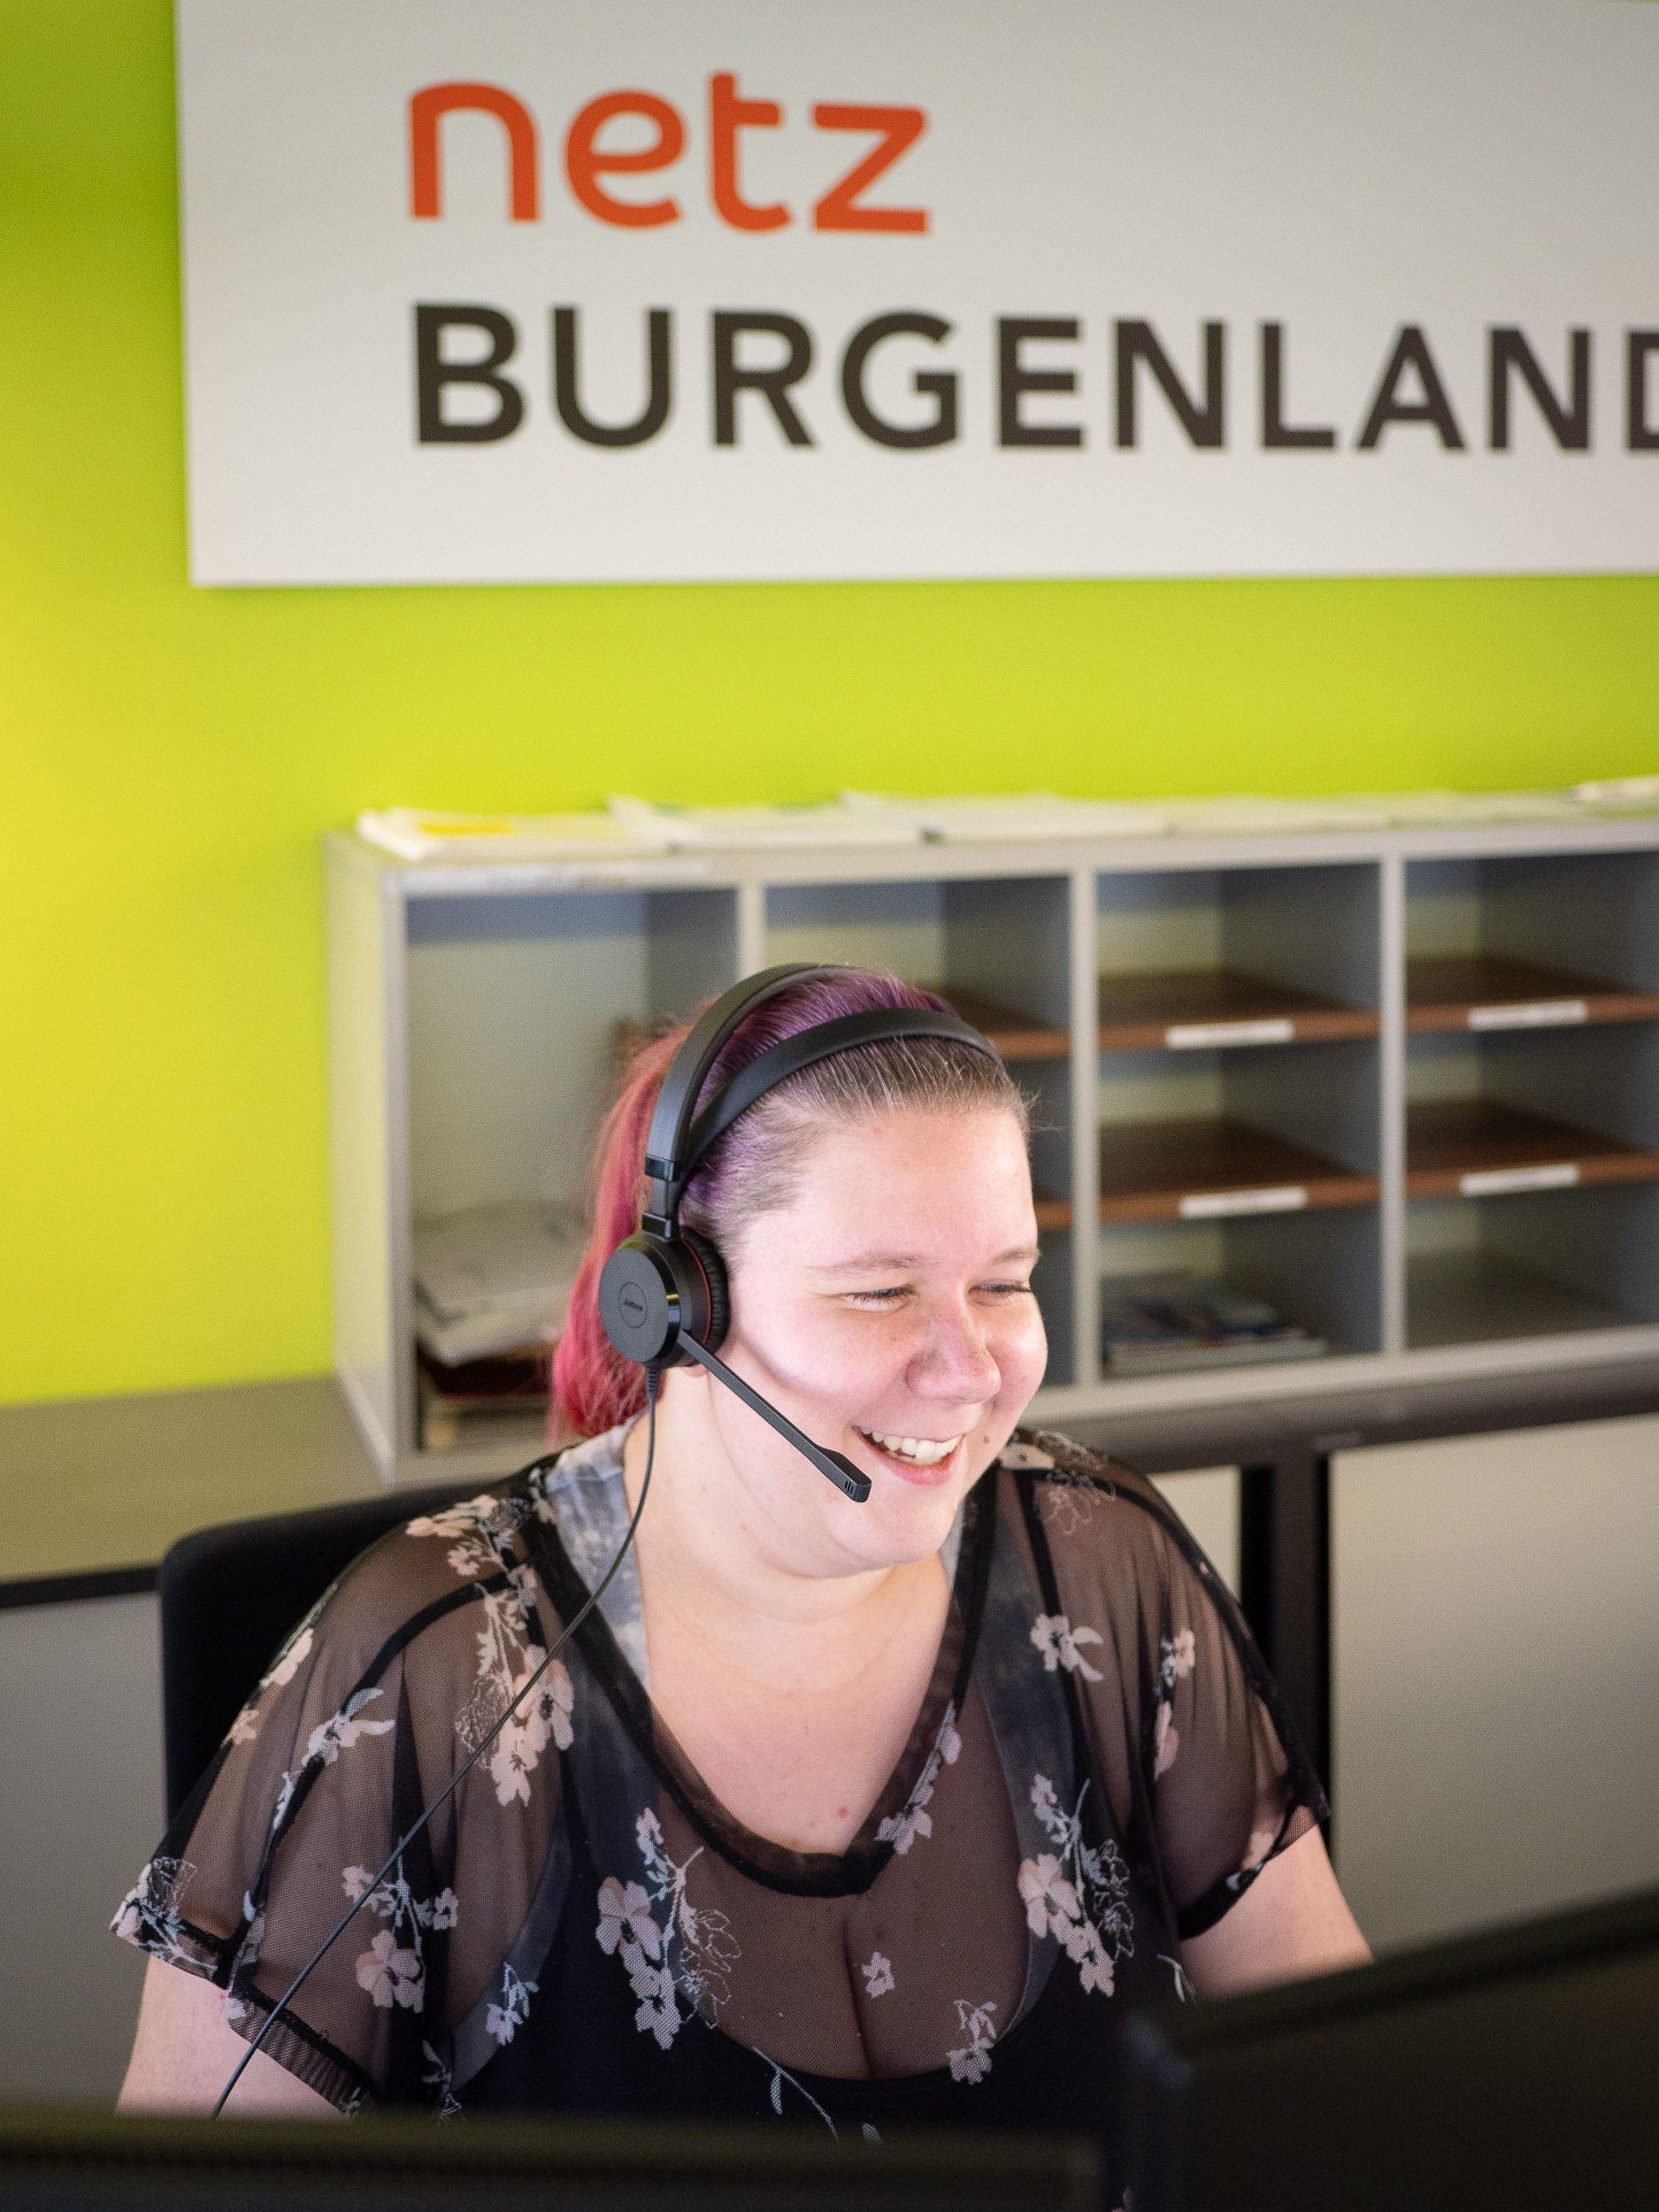 Netz Burgenland Kundendienstmitarbeiterin im Telefongespräch mit einem Kunden